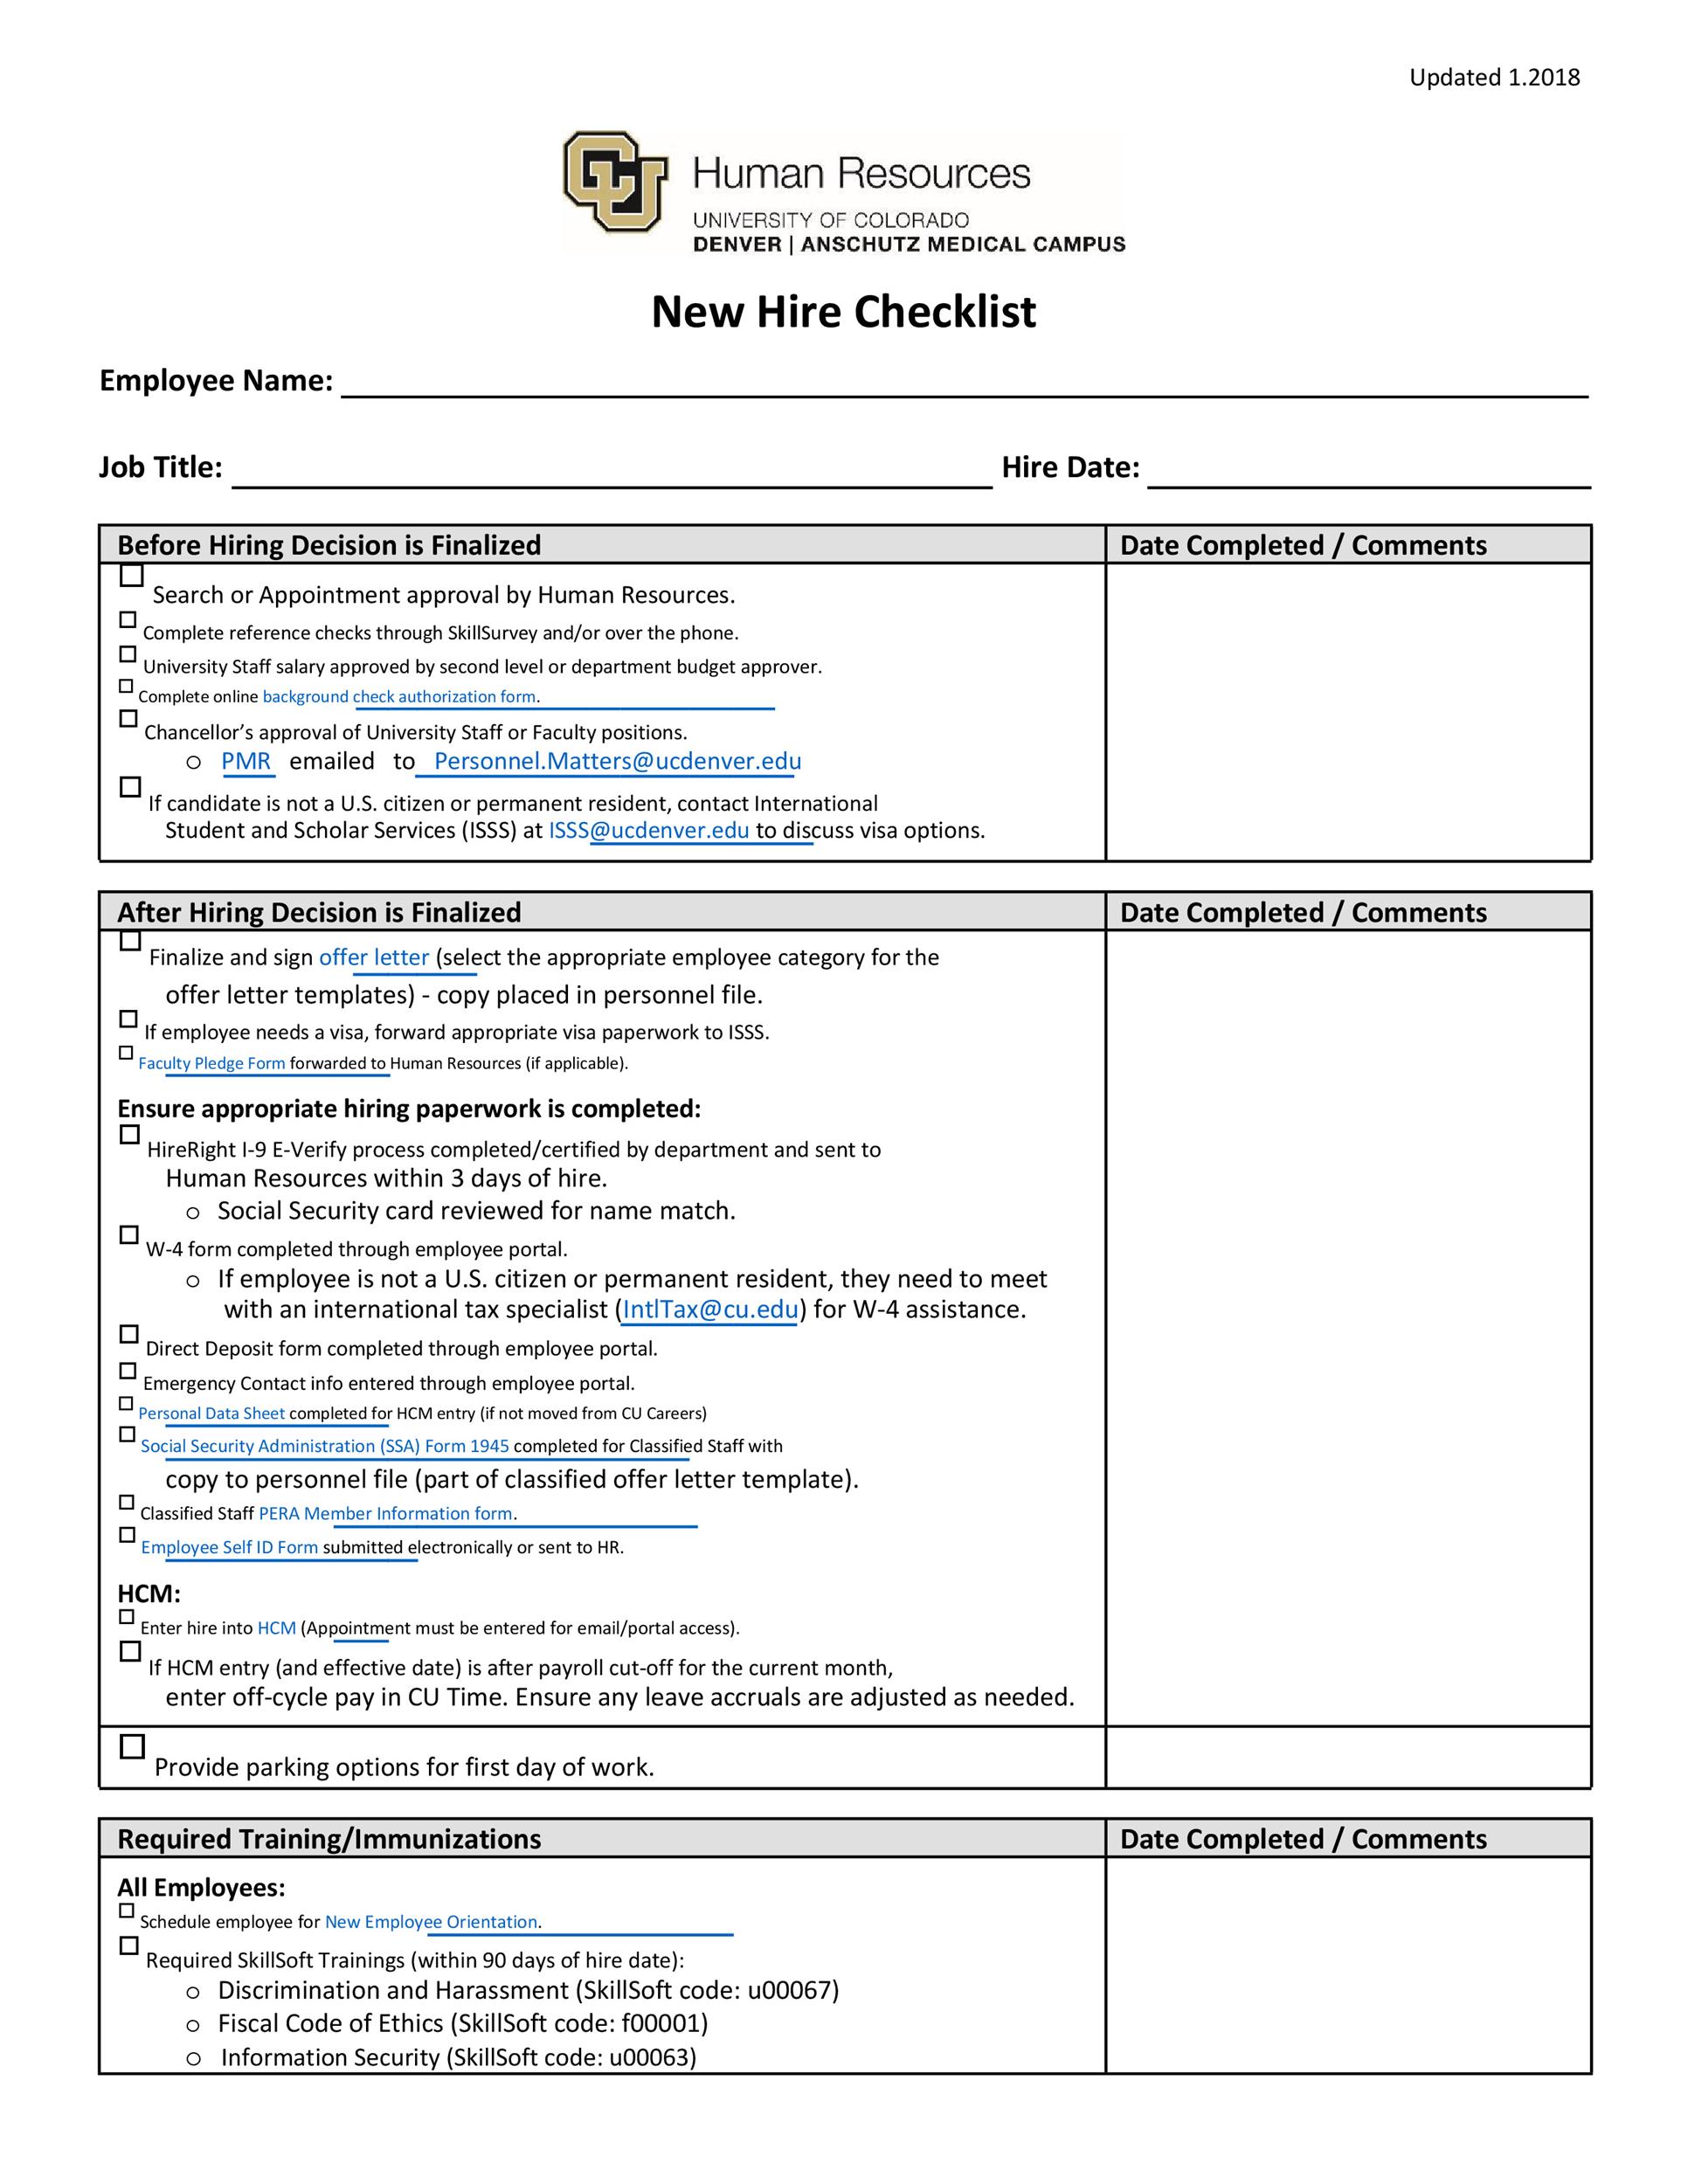 Free new hire checklist 01